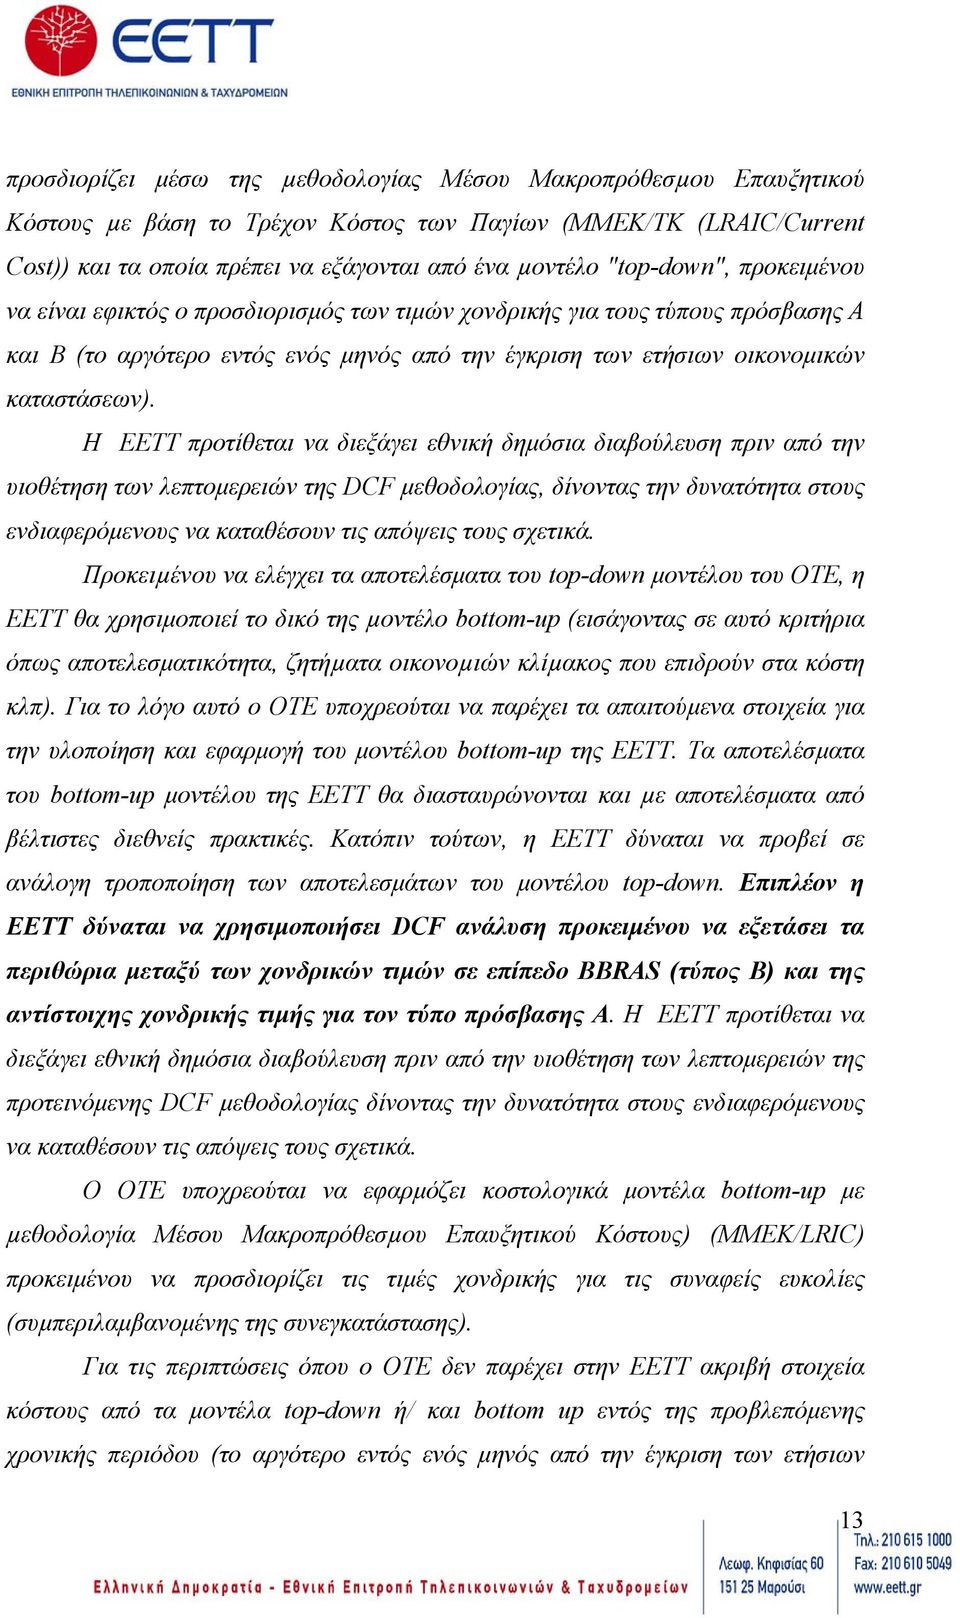 Η EETT προτίθεται να διεξάγει εθνική δηµόσια διαβούλευση πριν από την υιοθέτηση των λεπτοµερειών της DCF µεθοδολογίας, δίνοντας την δυνατότητα στους ενδιαφερόµενους να καταθέσουν τις απόψεις τους